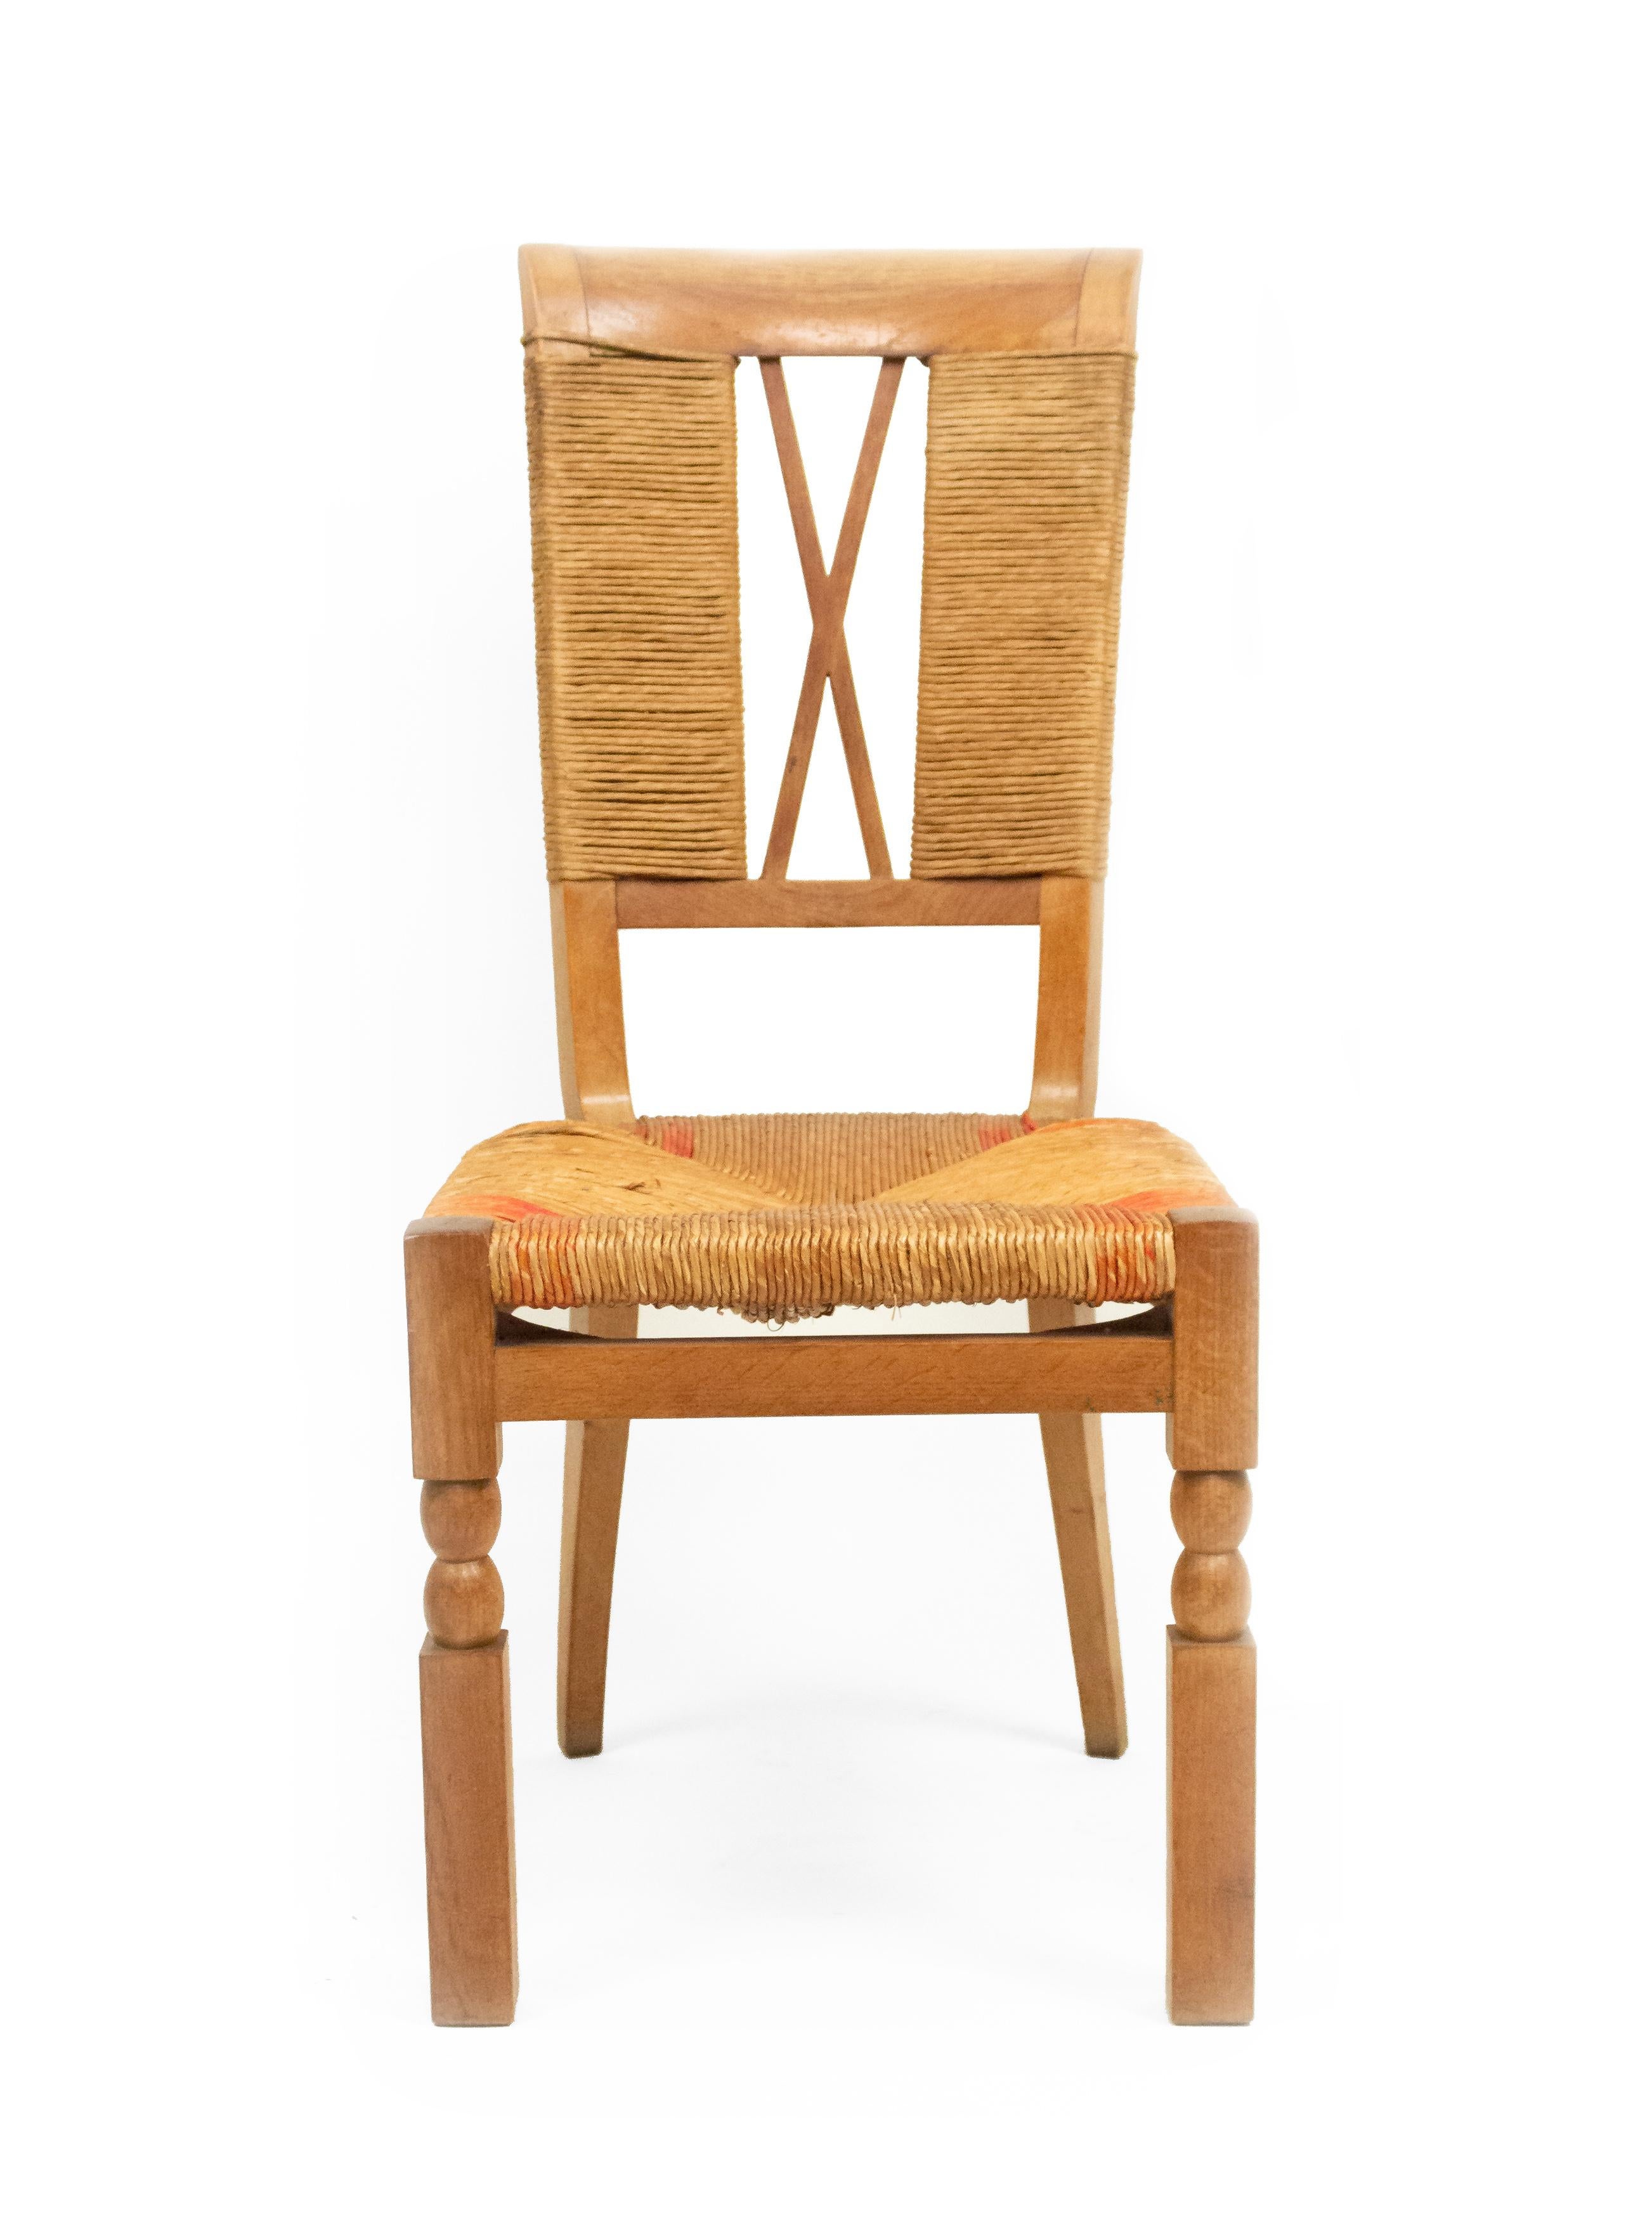 Satz von 6 französischen Beistellstühlen aus Eiche der 1940er Jahre mit naturfarbenen und rot besetzten geflochtenen Seegras-Sitzflächen und Rückenlehnen mit offenem 